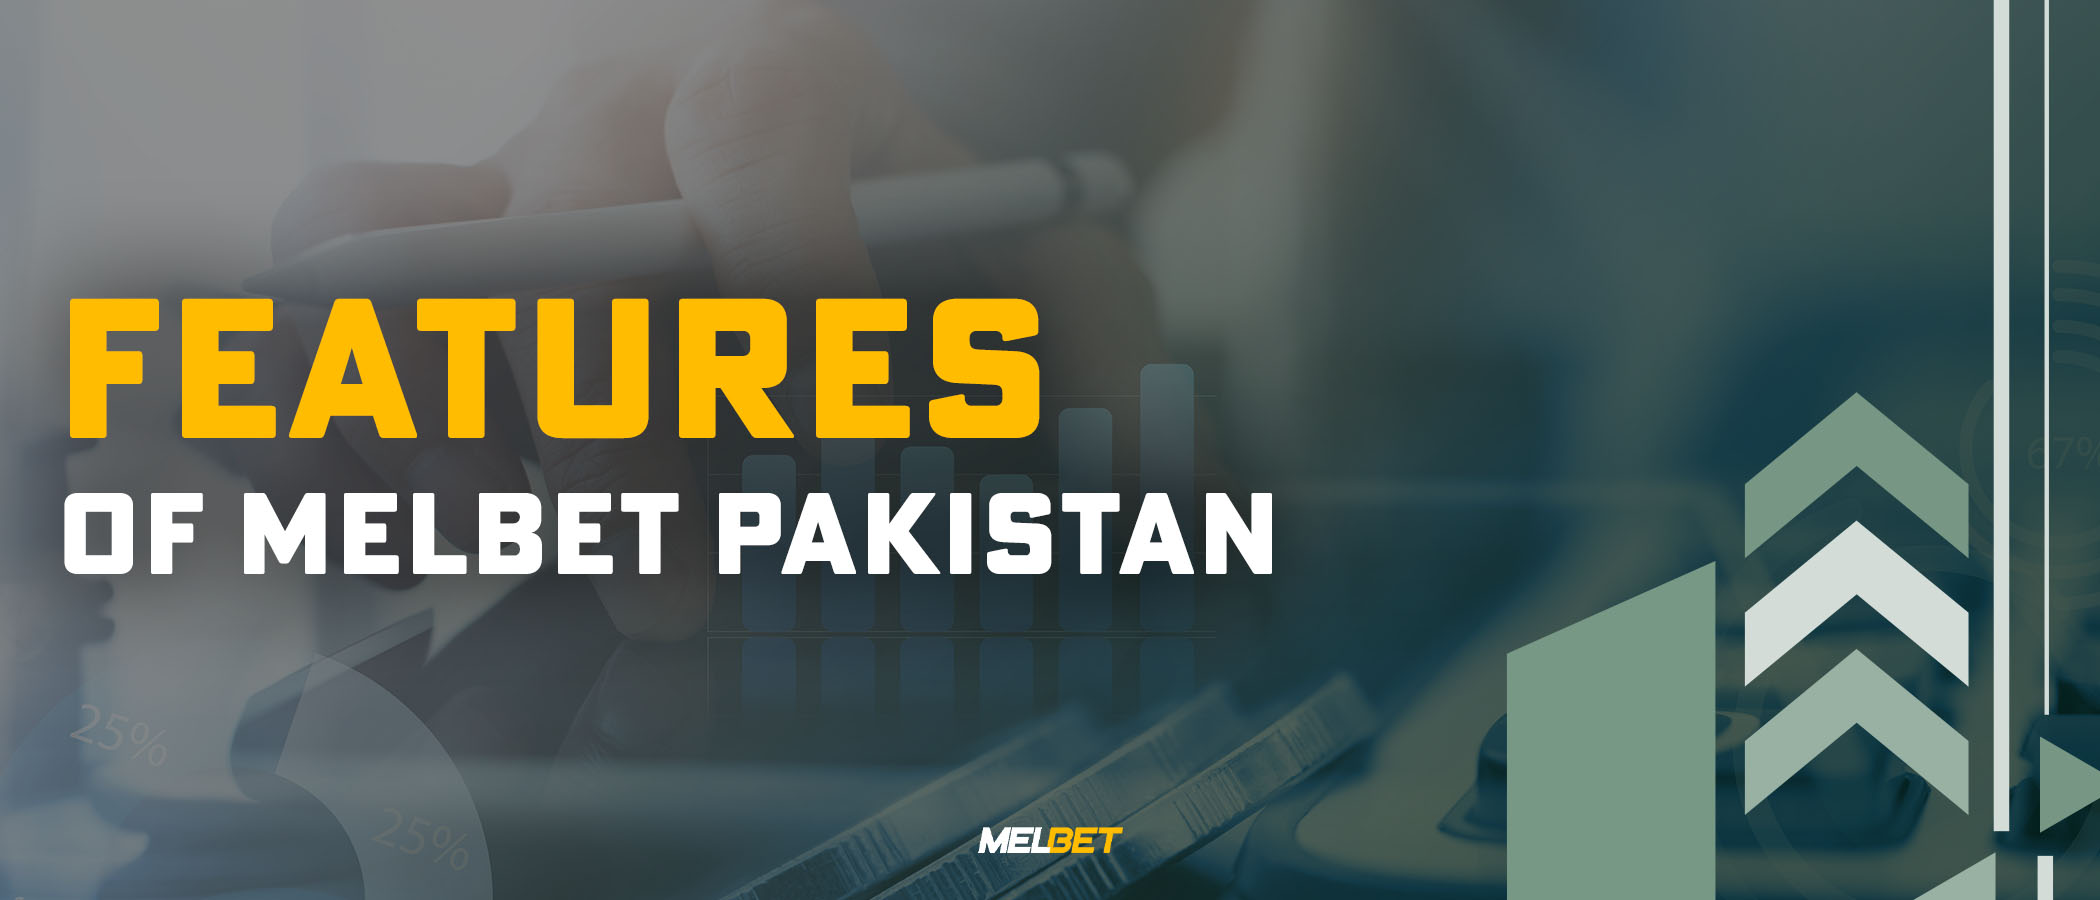 Features of Melbet Pakistan